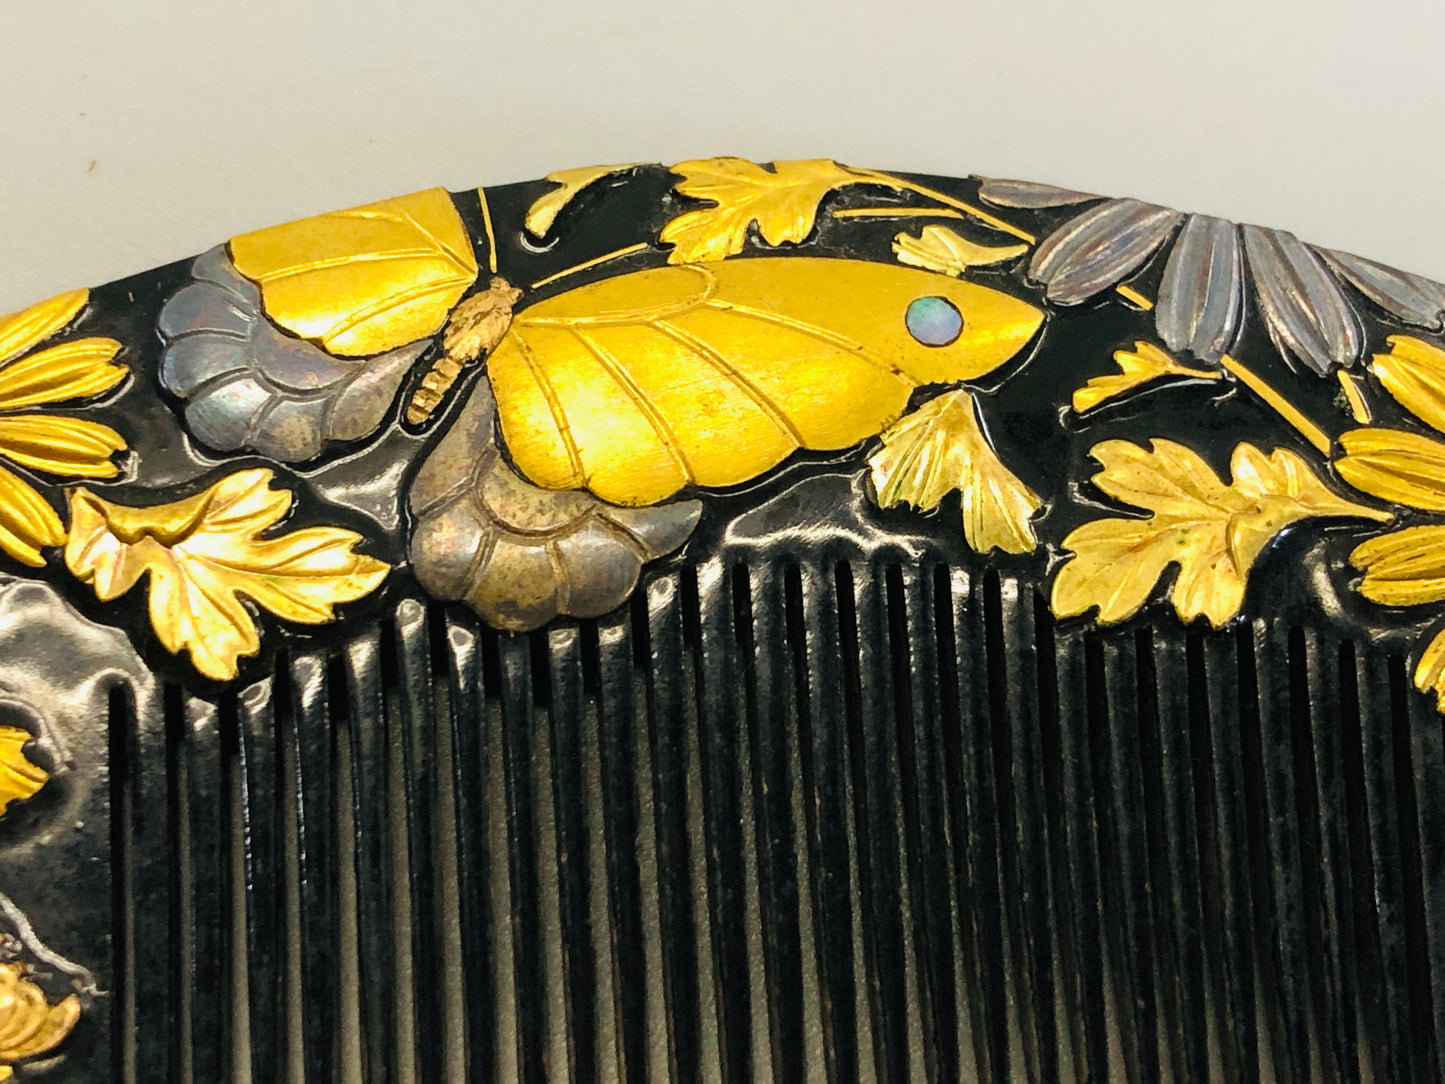 Y5347 KOUGAI  Makie Comb flower butterfly hair dressing Japan kimono accessory